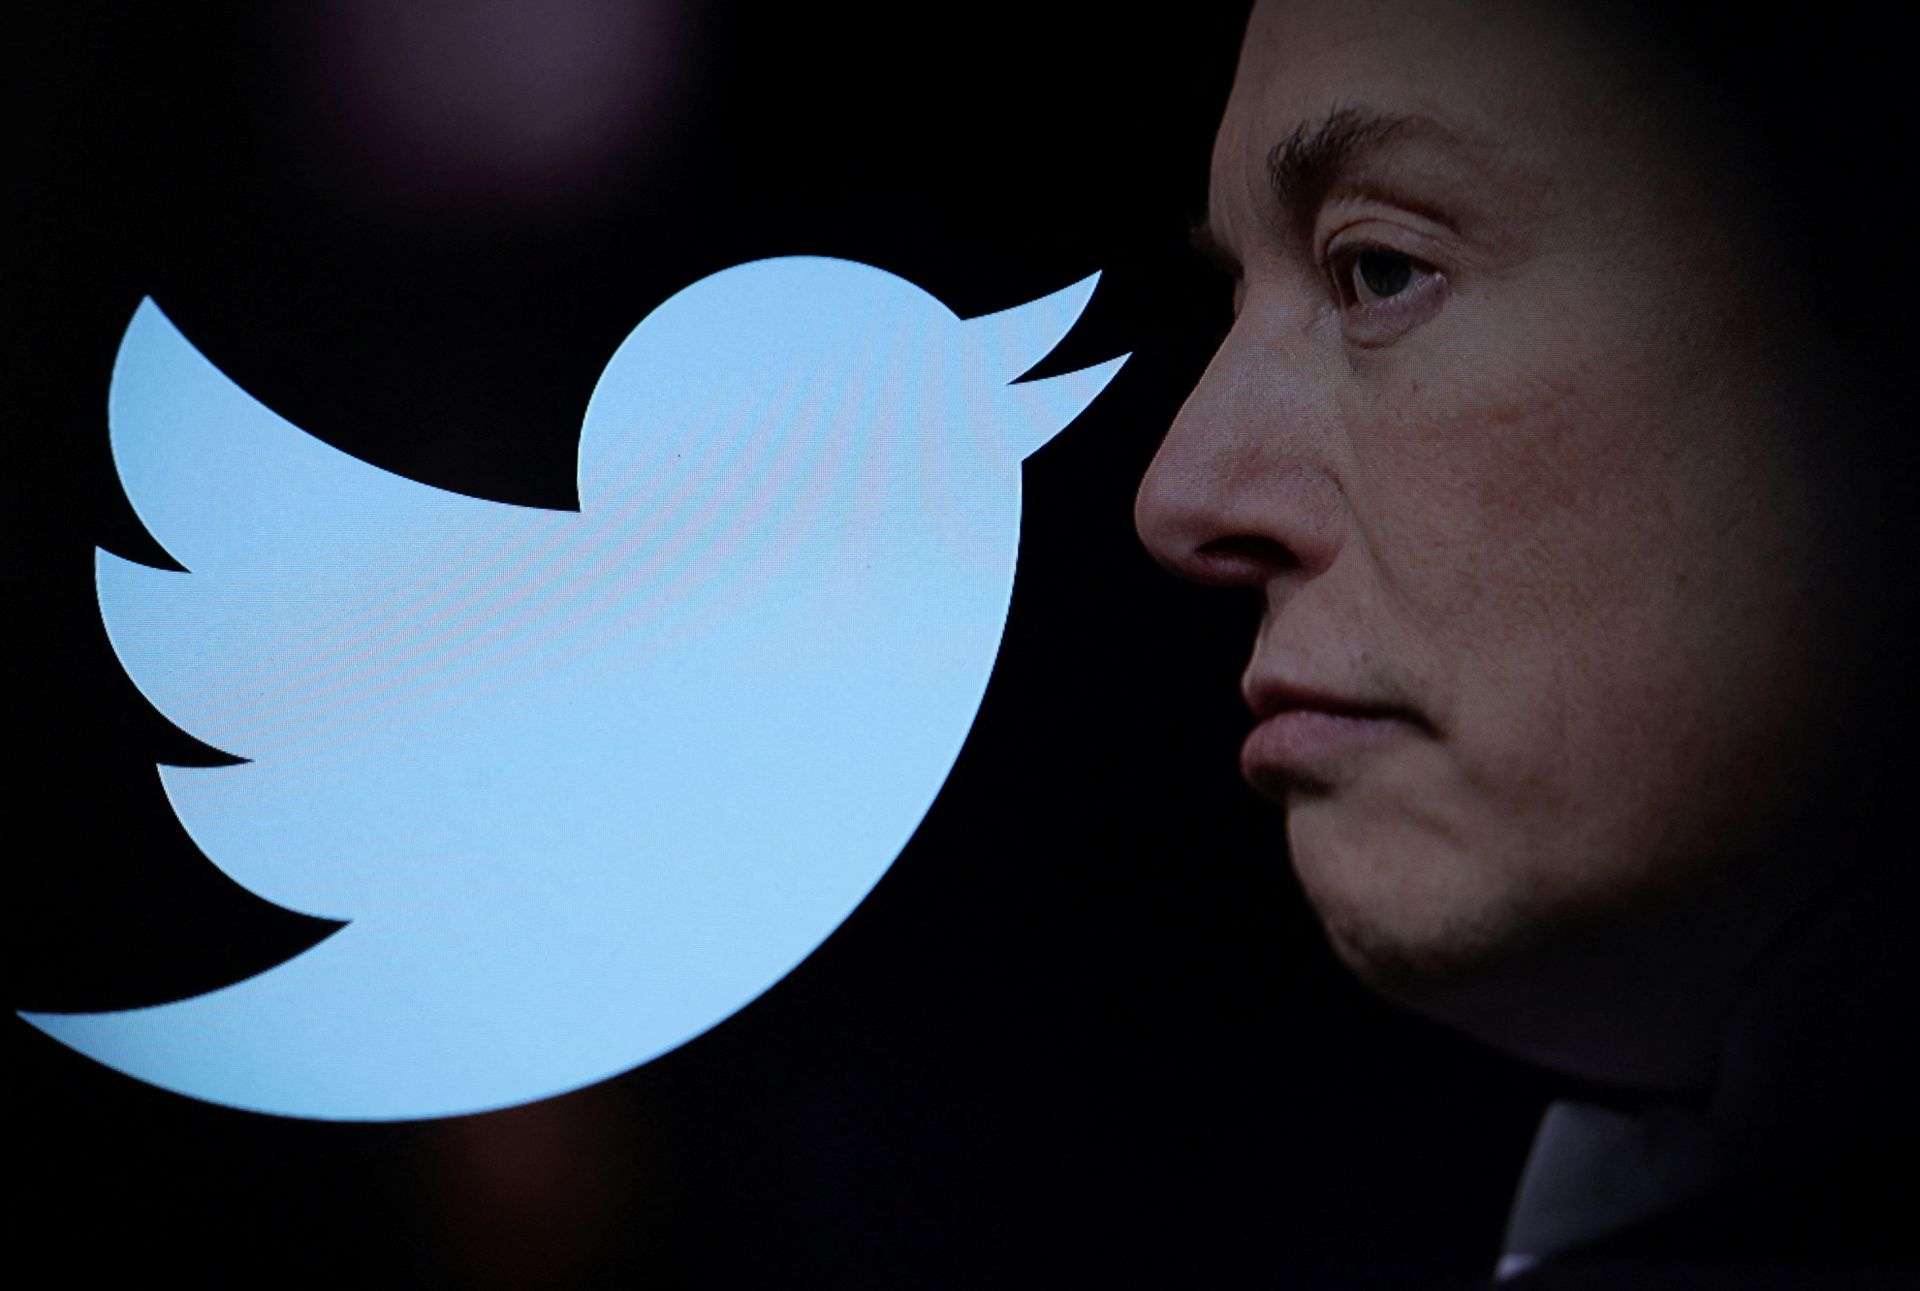 Elon Musk kupuje Twittera za 44 mld dolarów i natychmiast zwalnia poprzedni zarząd